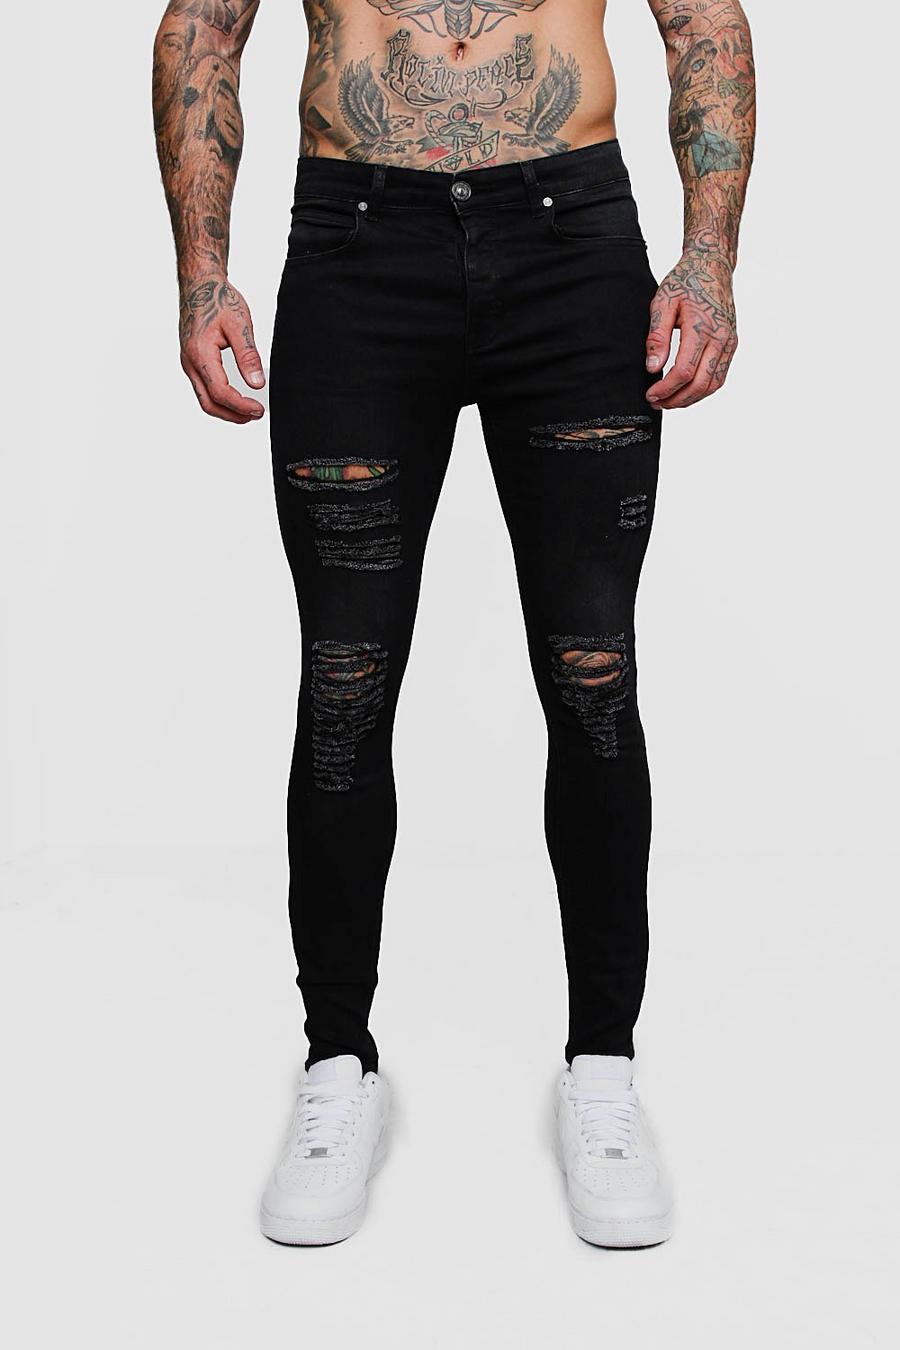 שחור nero סופר סקיני ג'ינס עם קרעים לכל האורך